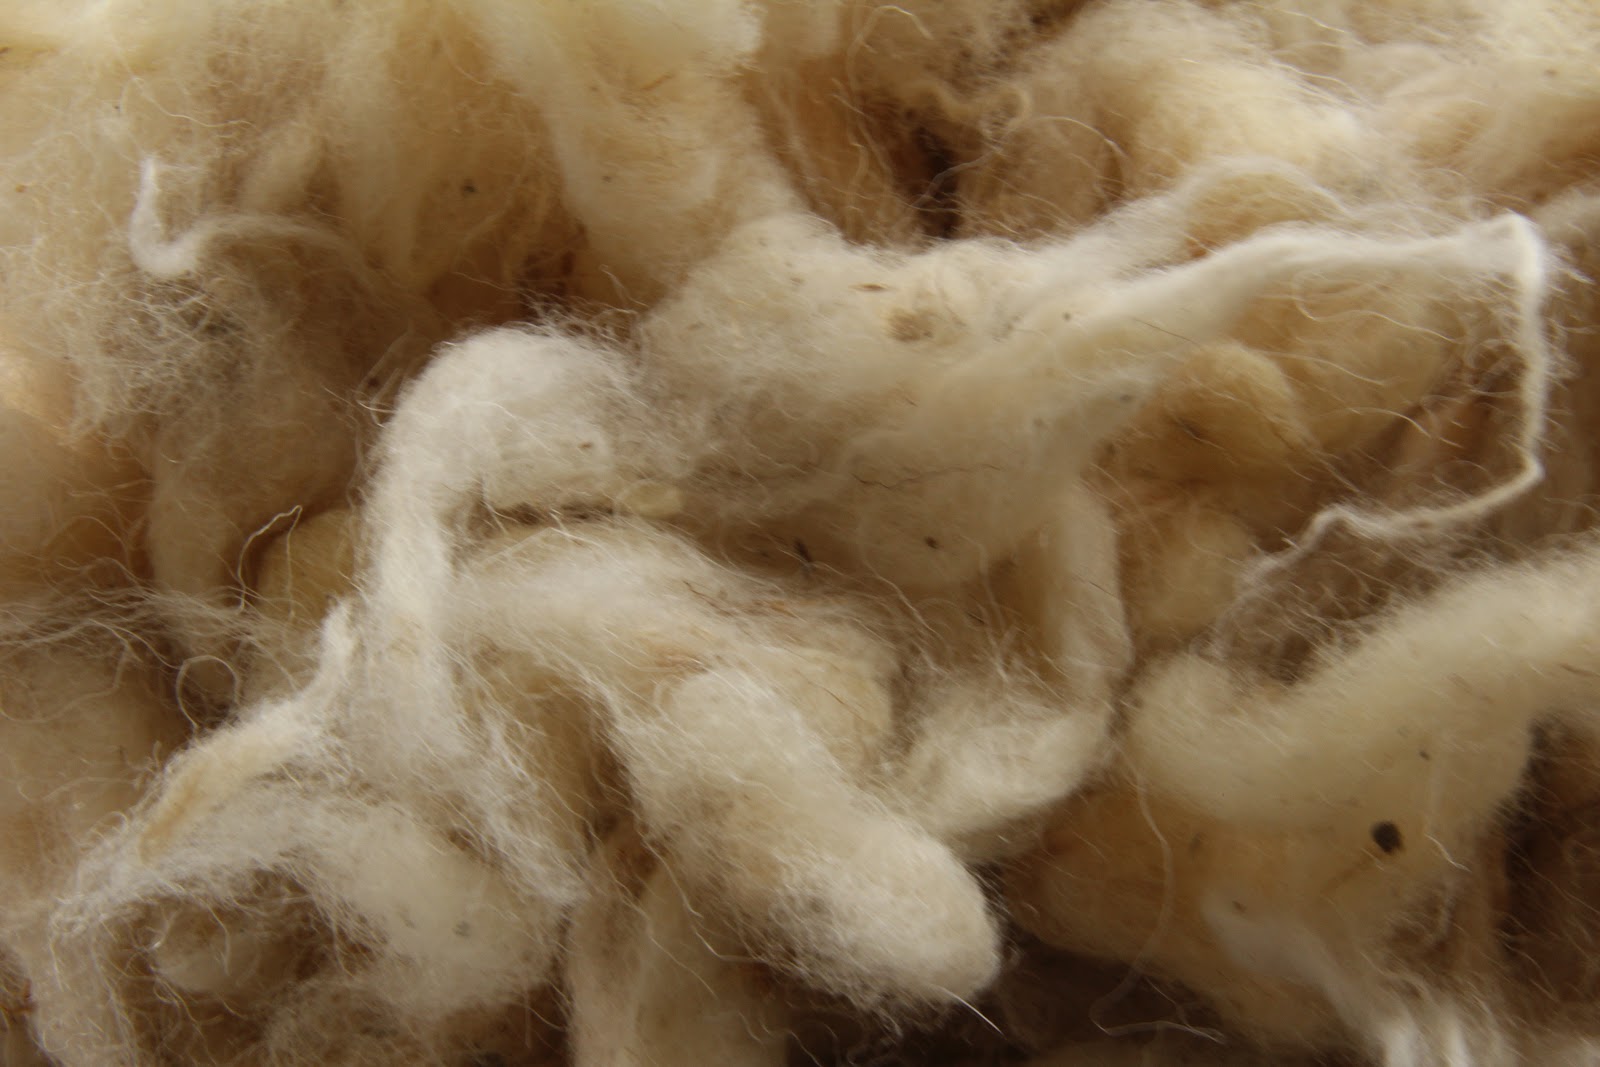 Cotone e lana, prezzi al massimo da 3 anni - Pambianconews